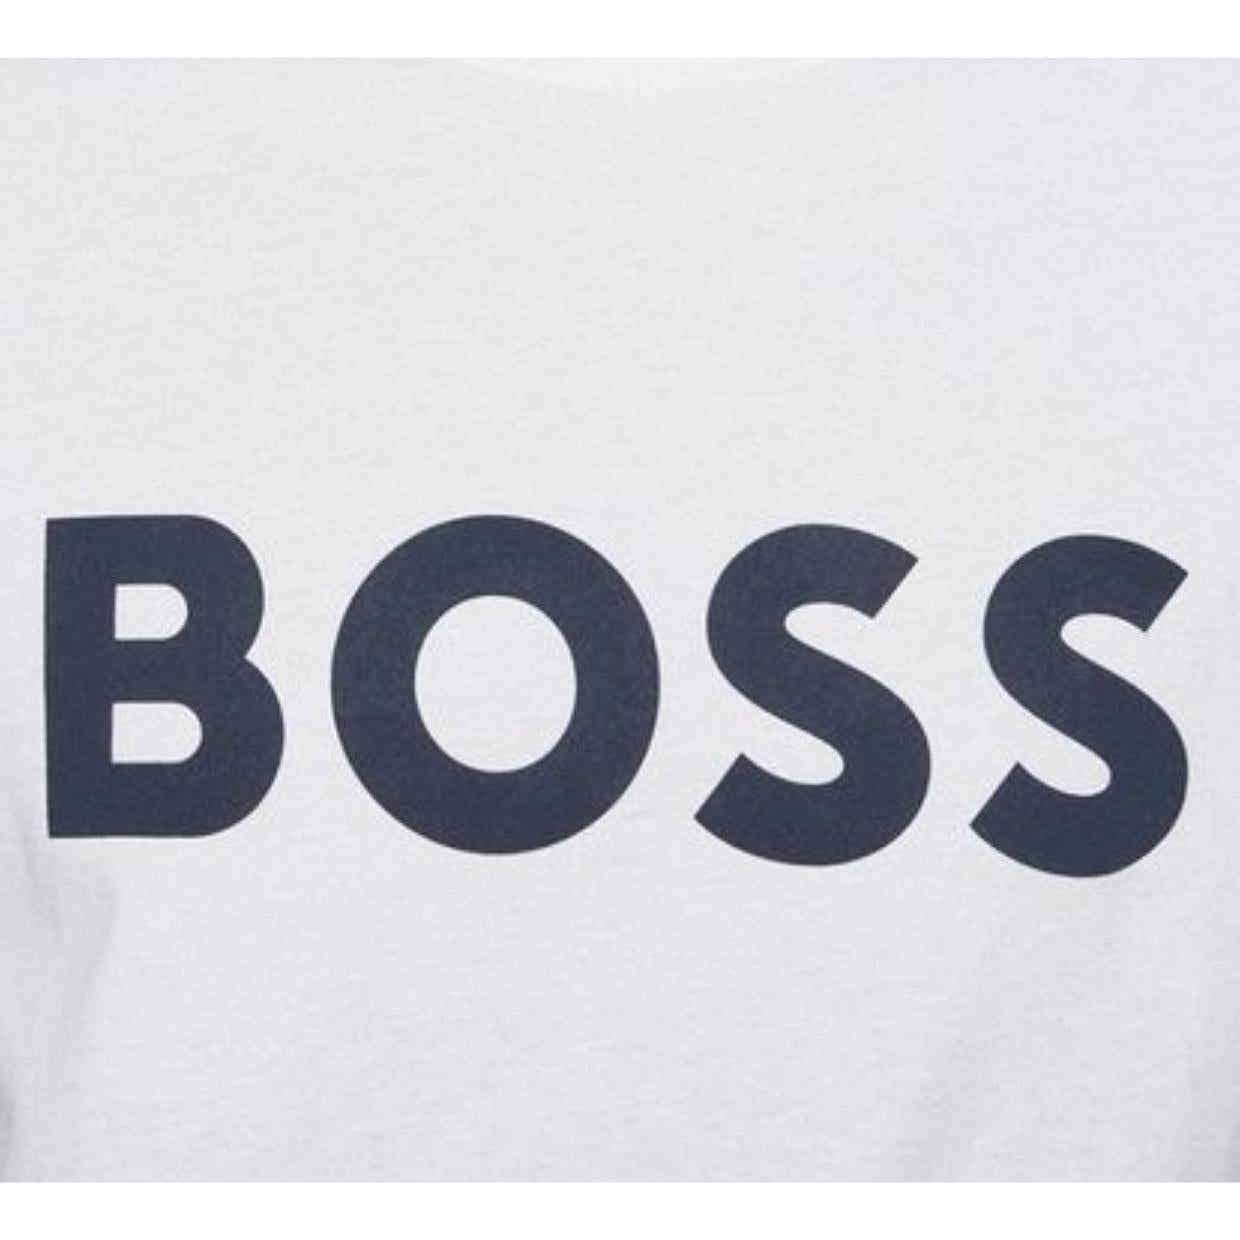 BOSS Logo Thinking White T-Shirt